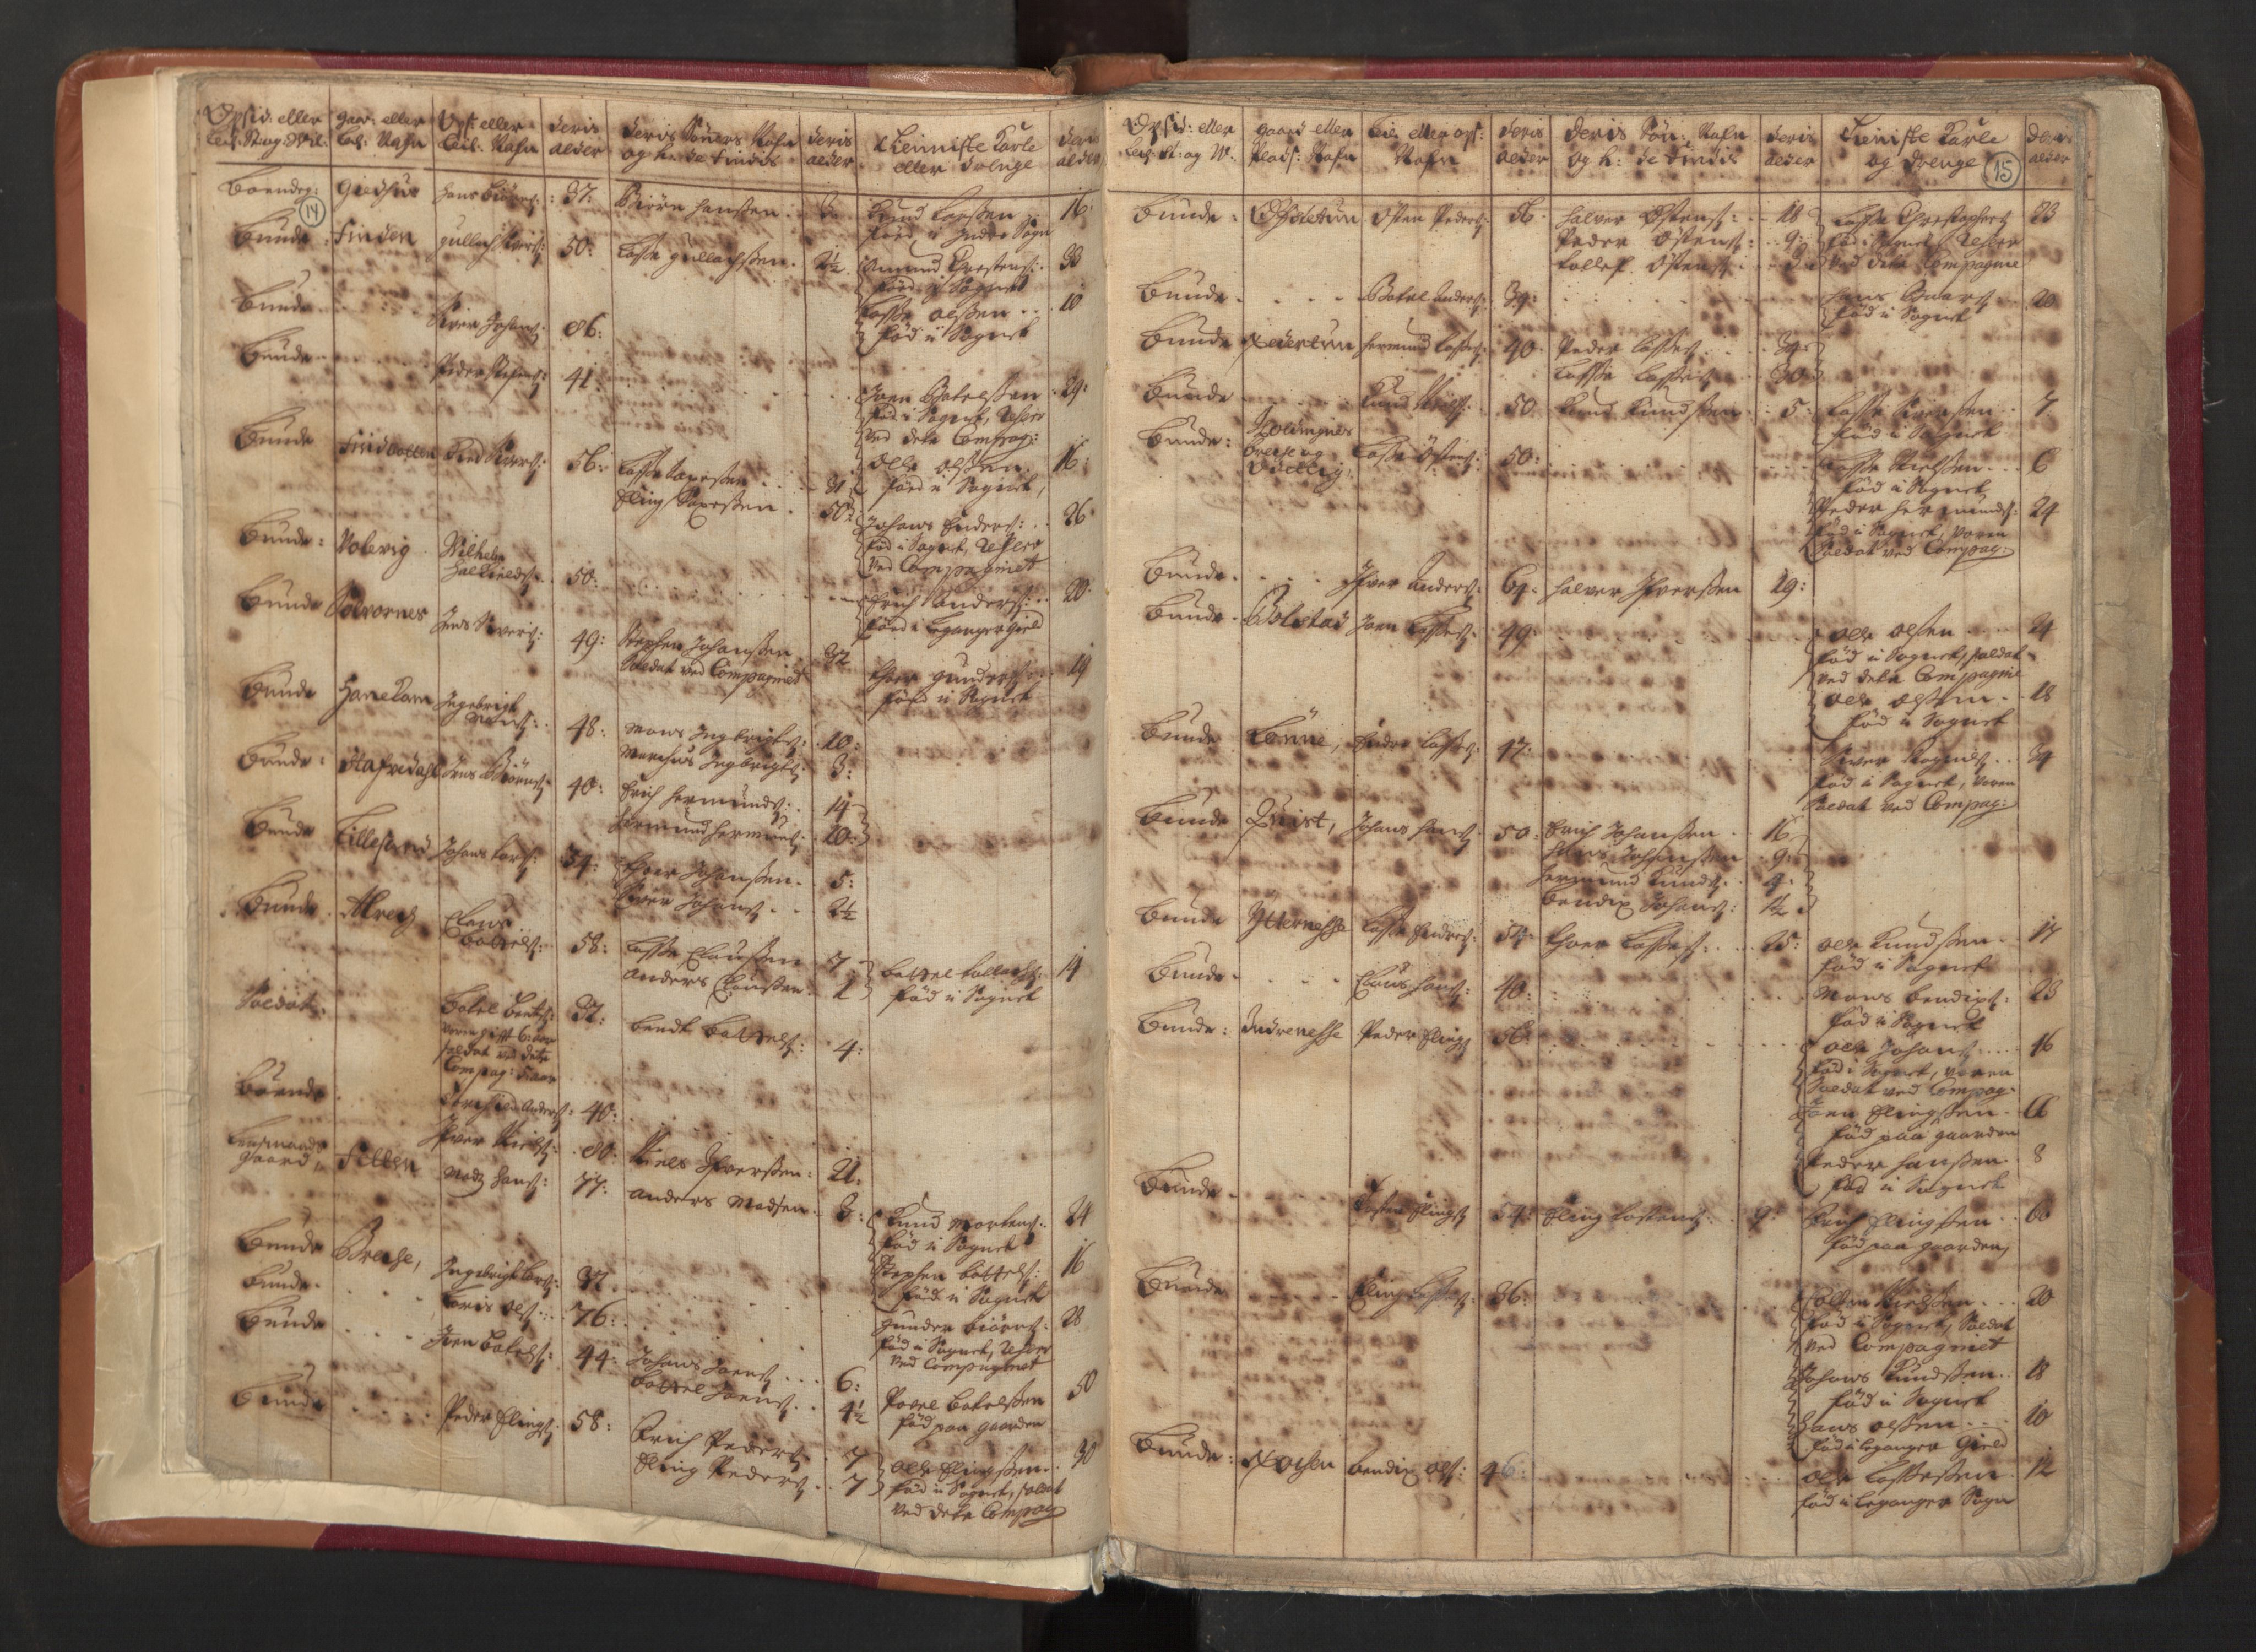 RA, Manntallet 1701, nr. 8: Ytre Sogn fogderi og Indre Sogn fogderi, 1701, s. 14-15